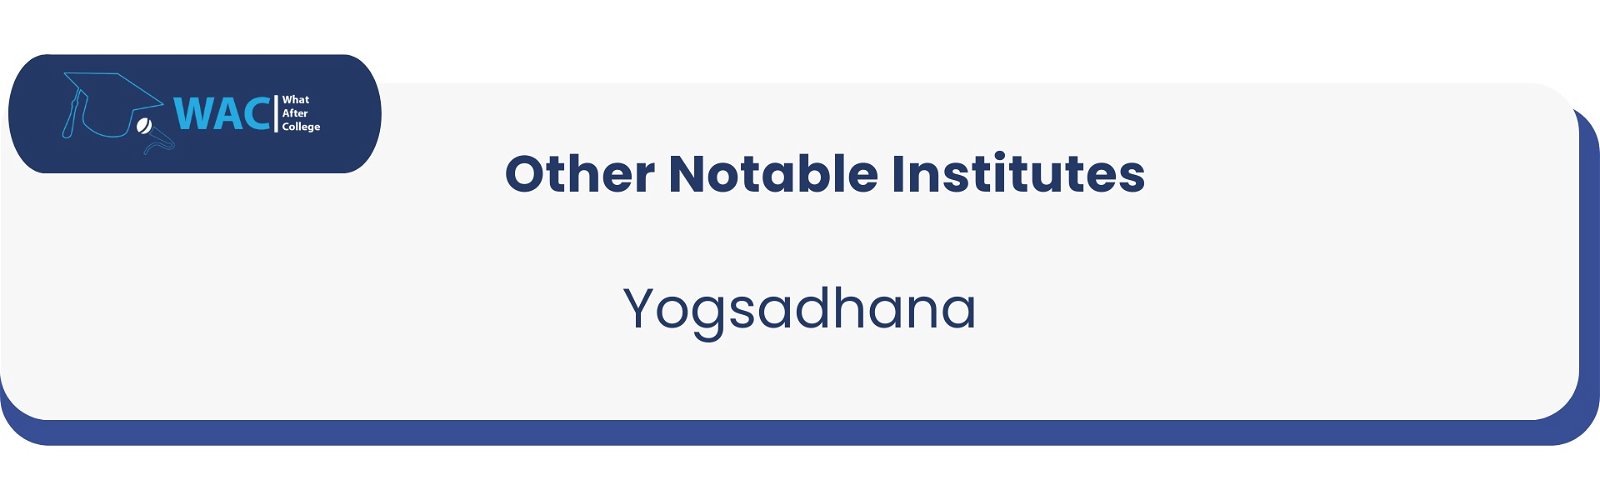 Yogsadhana